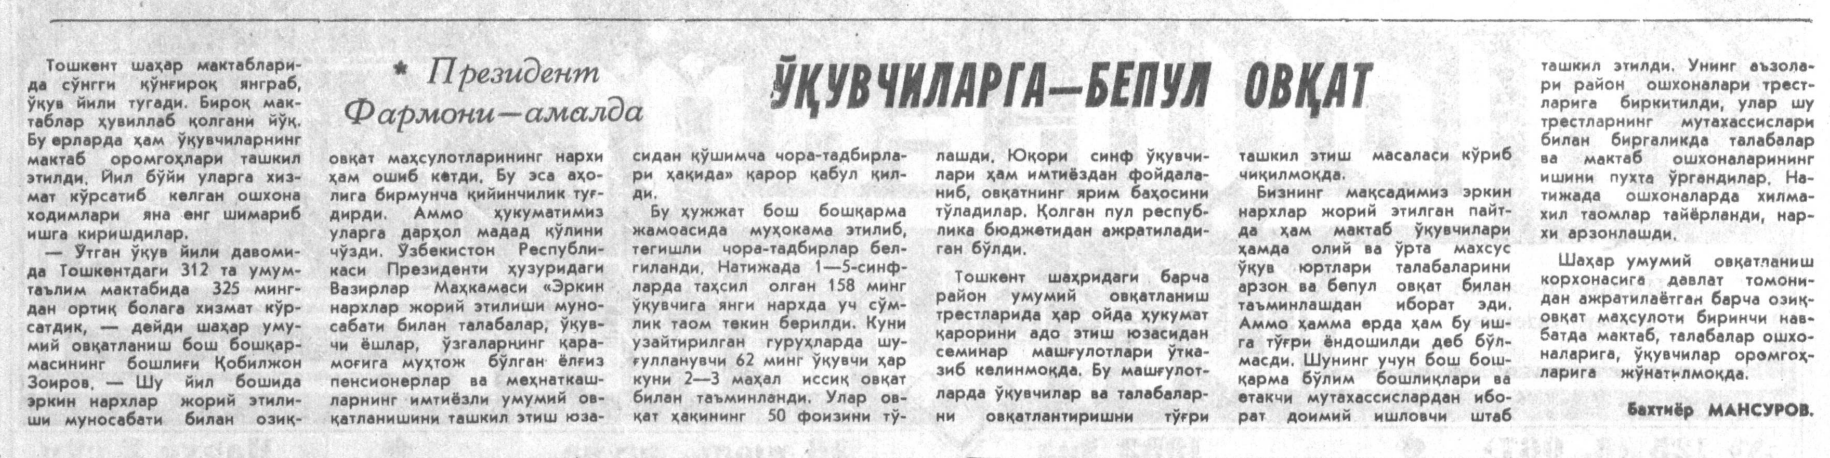 “Toshkent oqshomi” gazetasining 1992-yil 26-iyun sonidan lavha